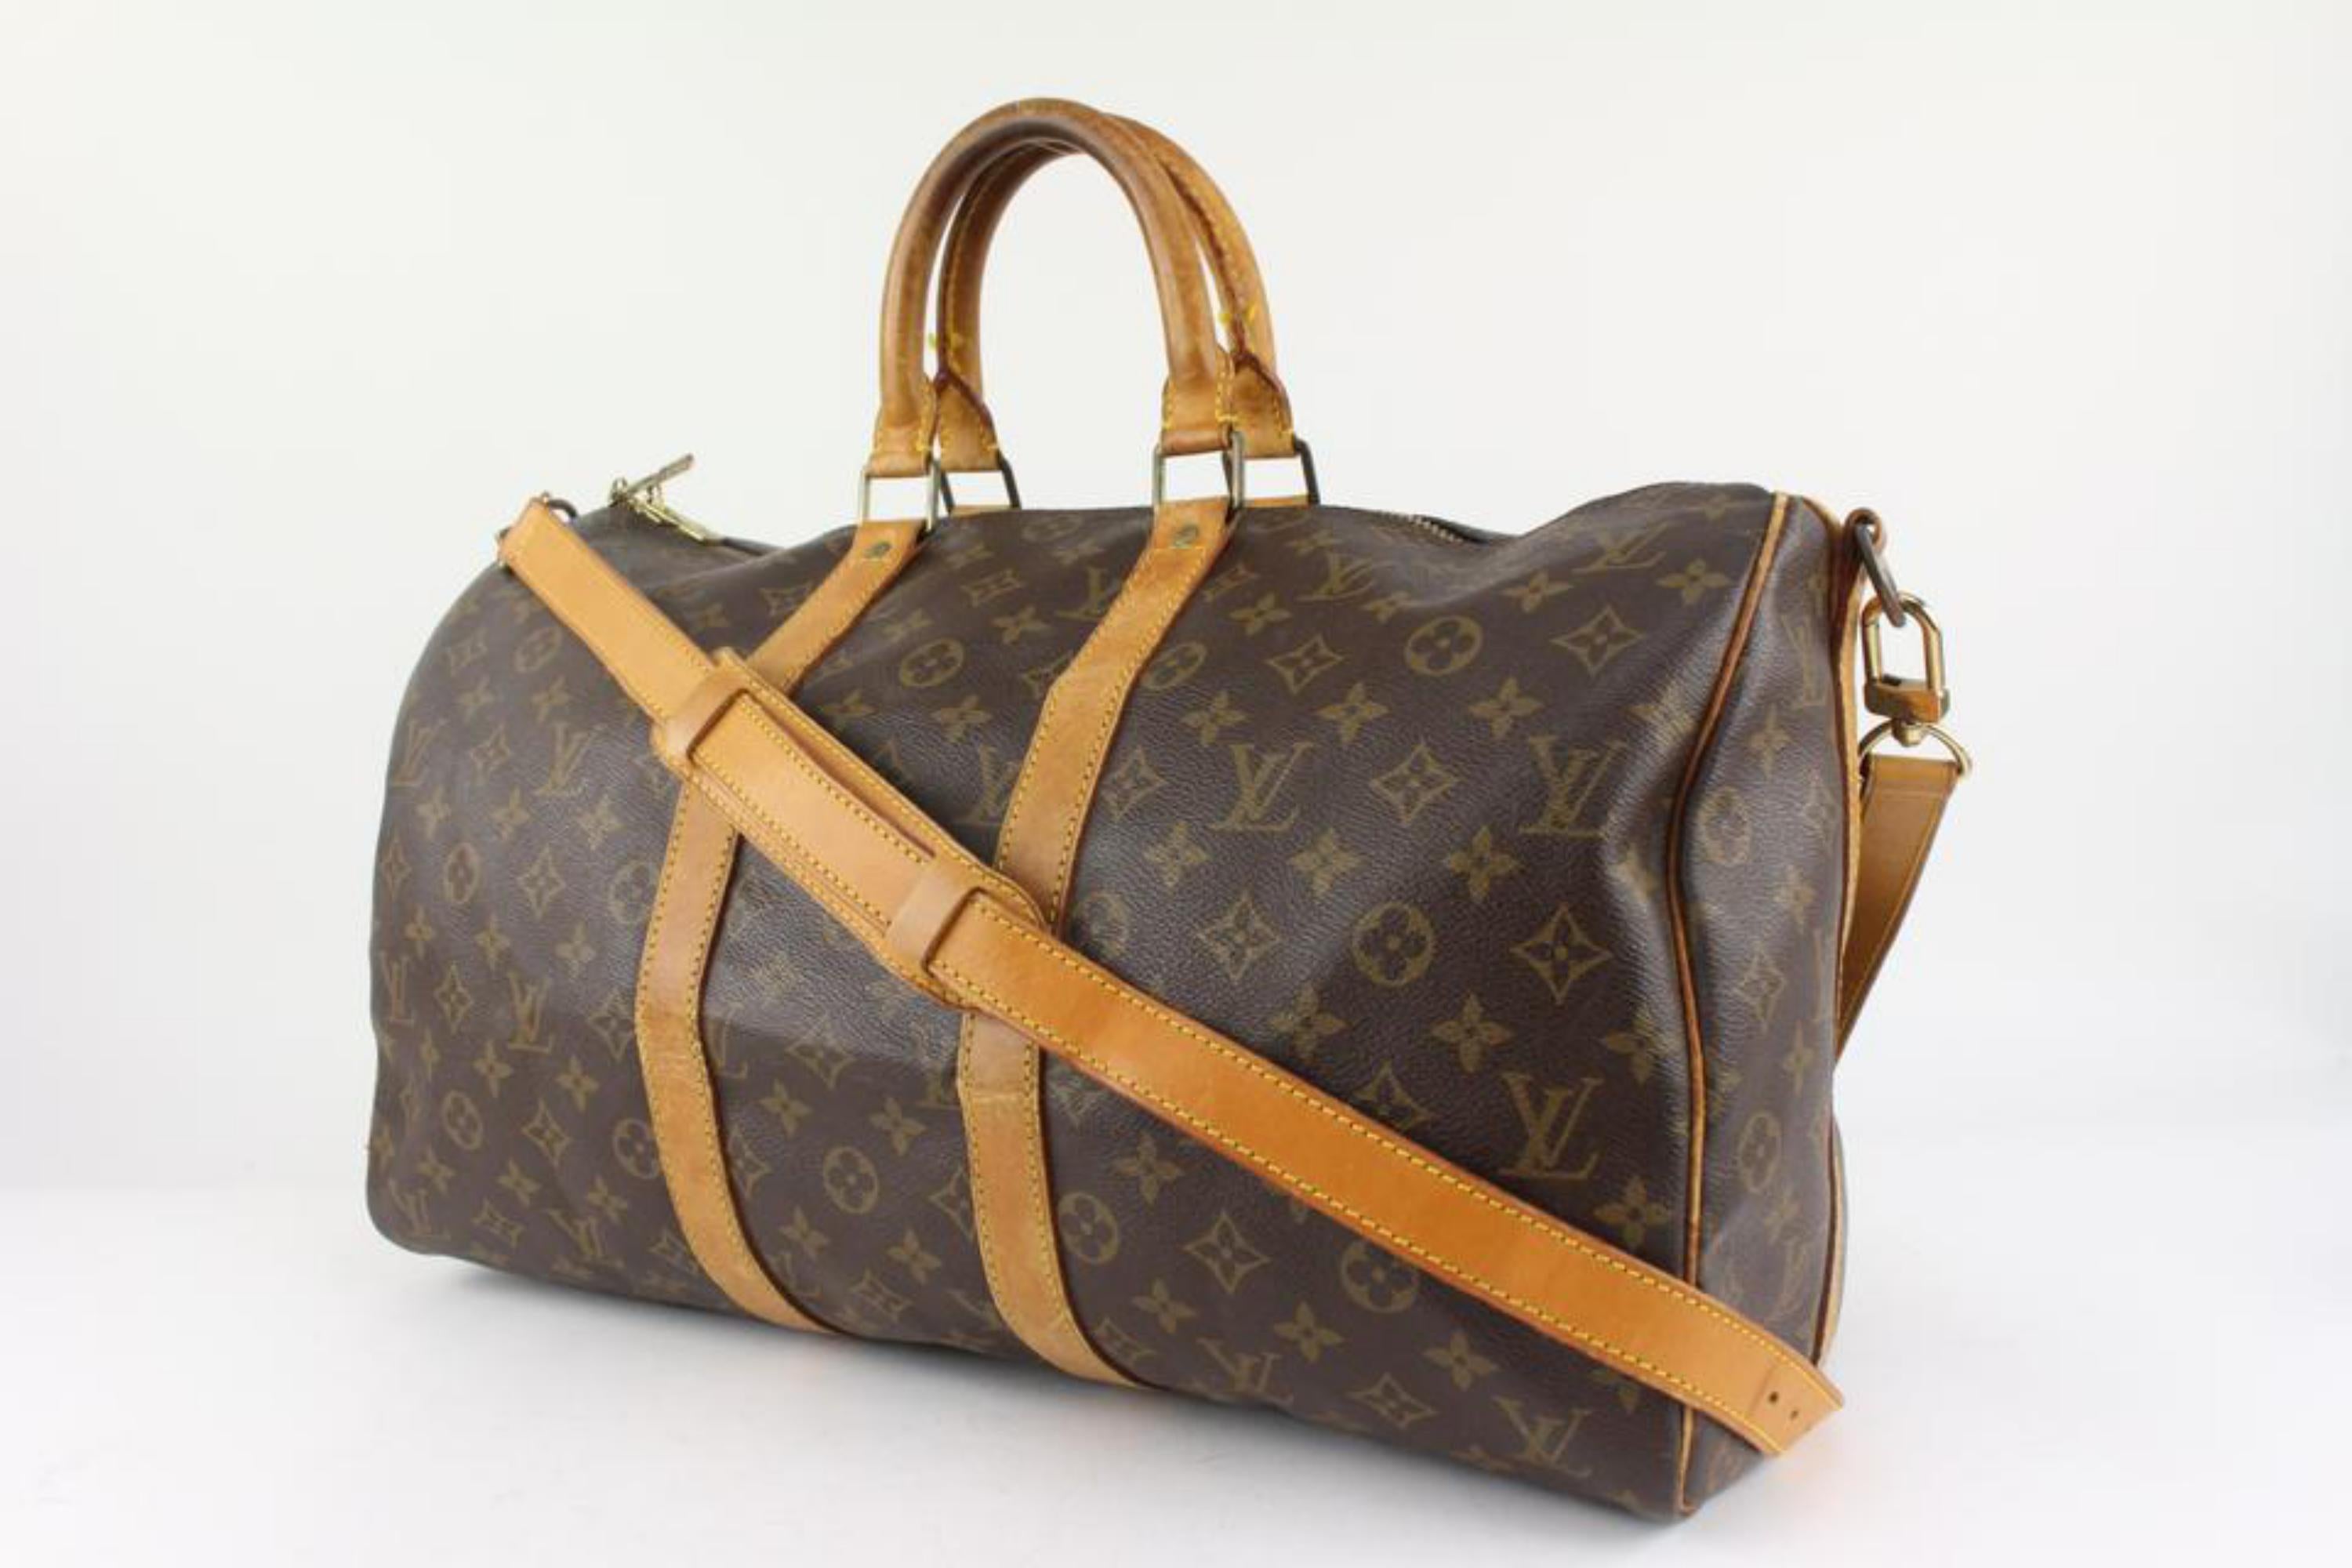 Louis Vuitton Monogram Keepall Bandouliere 45 Duffle Bag mit Riemen 1122lv11
Datum Code/Seriennummer: VI0930
Hergestellt in: Frankreich
Maße: Länge:  18